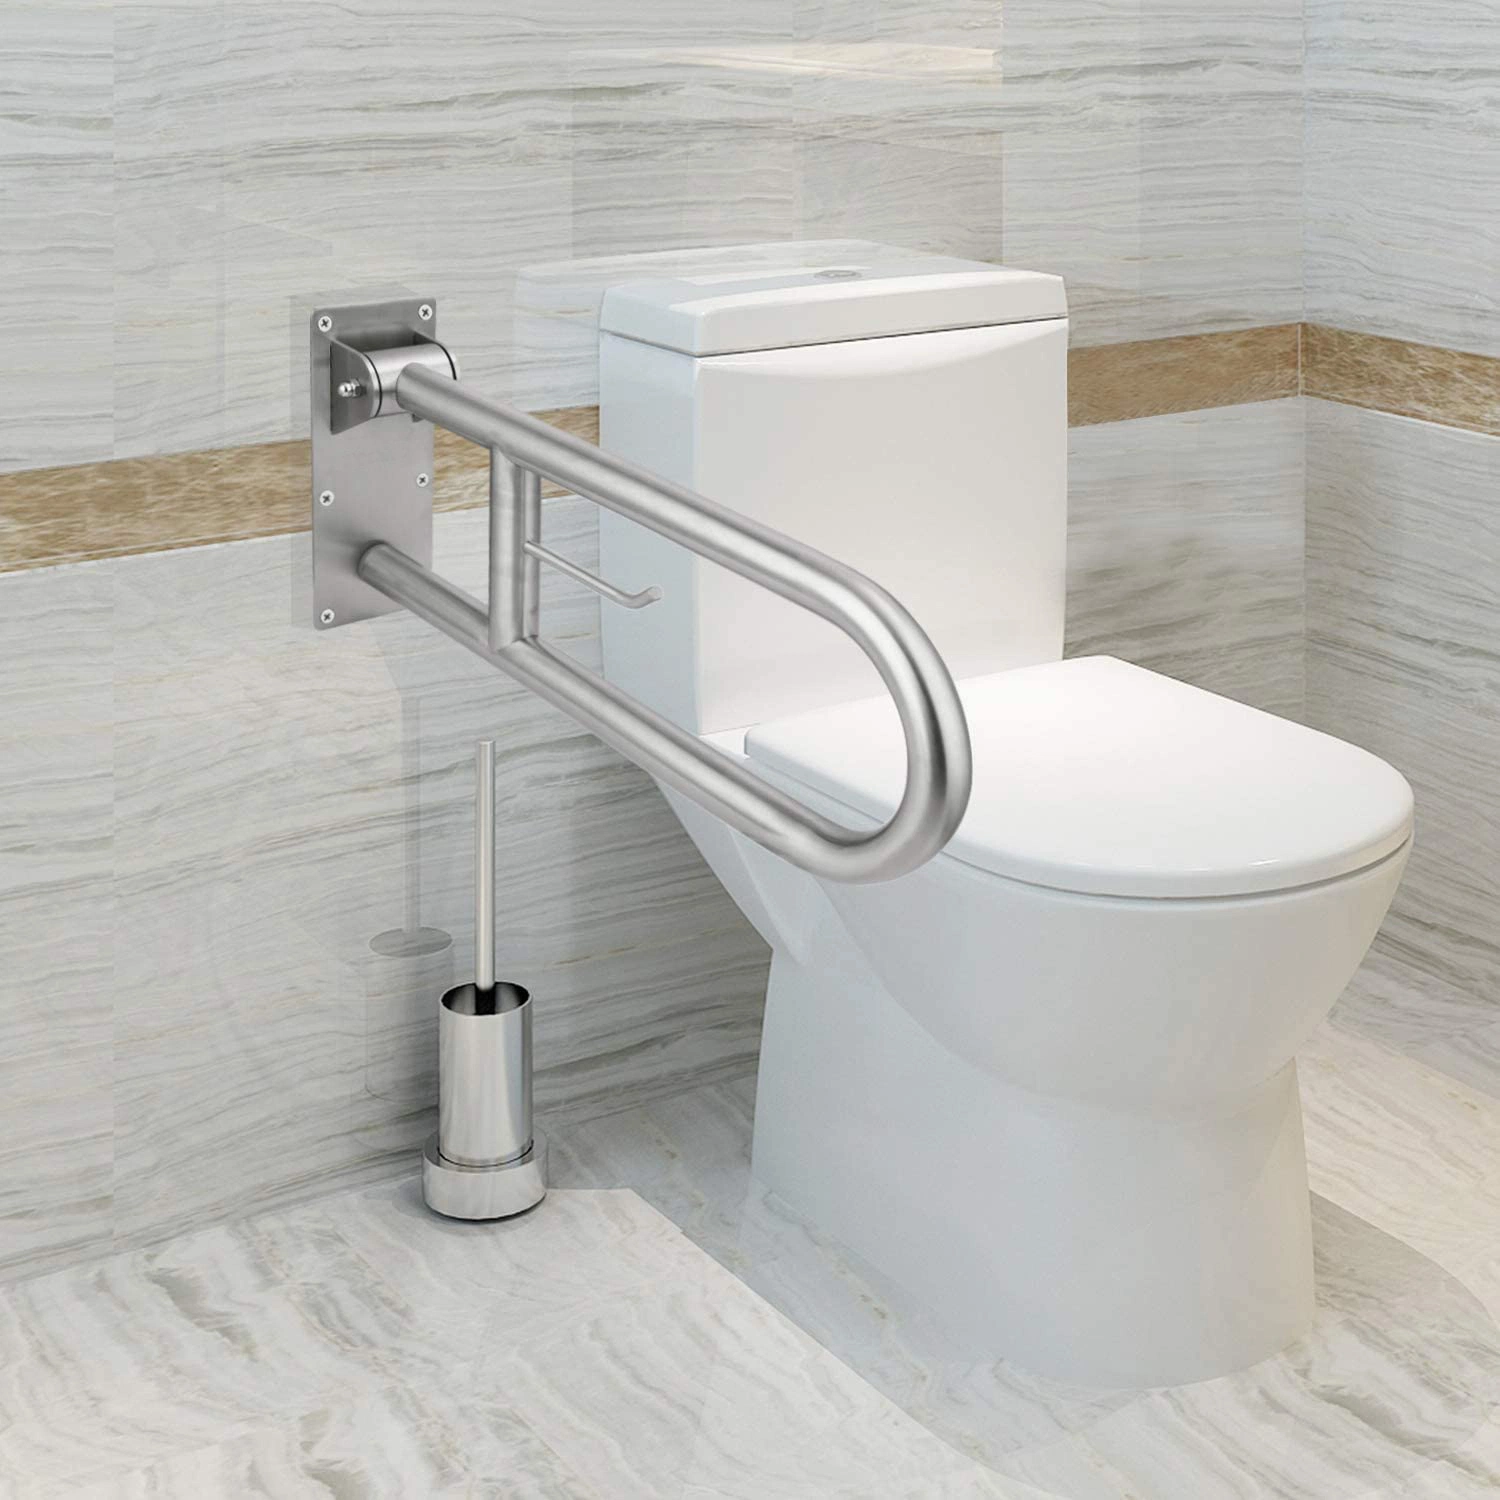 Barre de maintien pour salle de bains rabattable en acier inoxydable rails de sécurité pour toilettes Pour les personnes âgées